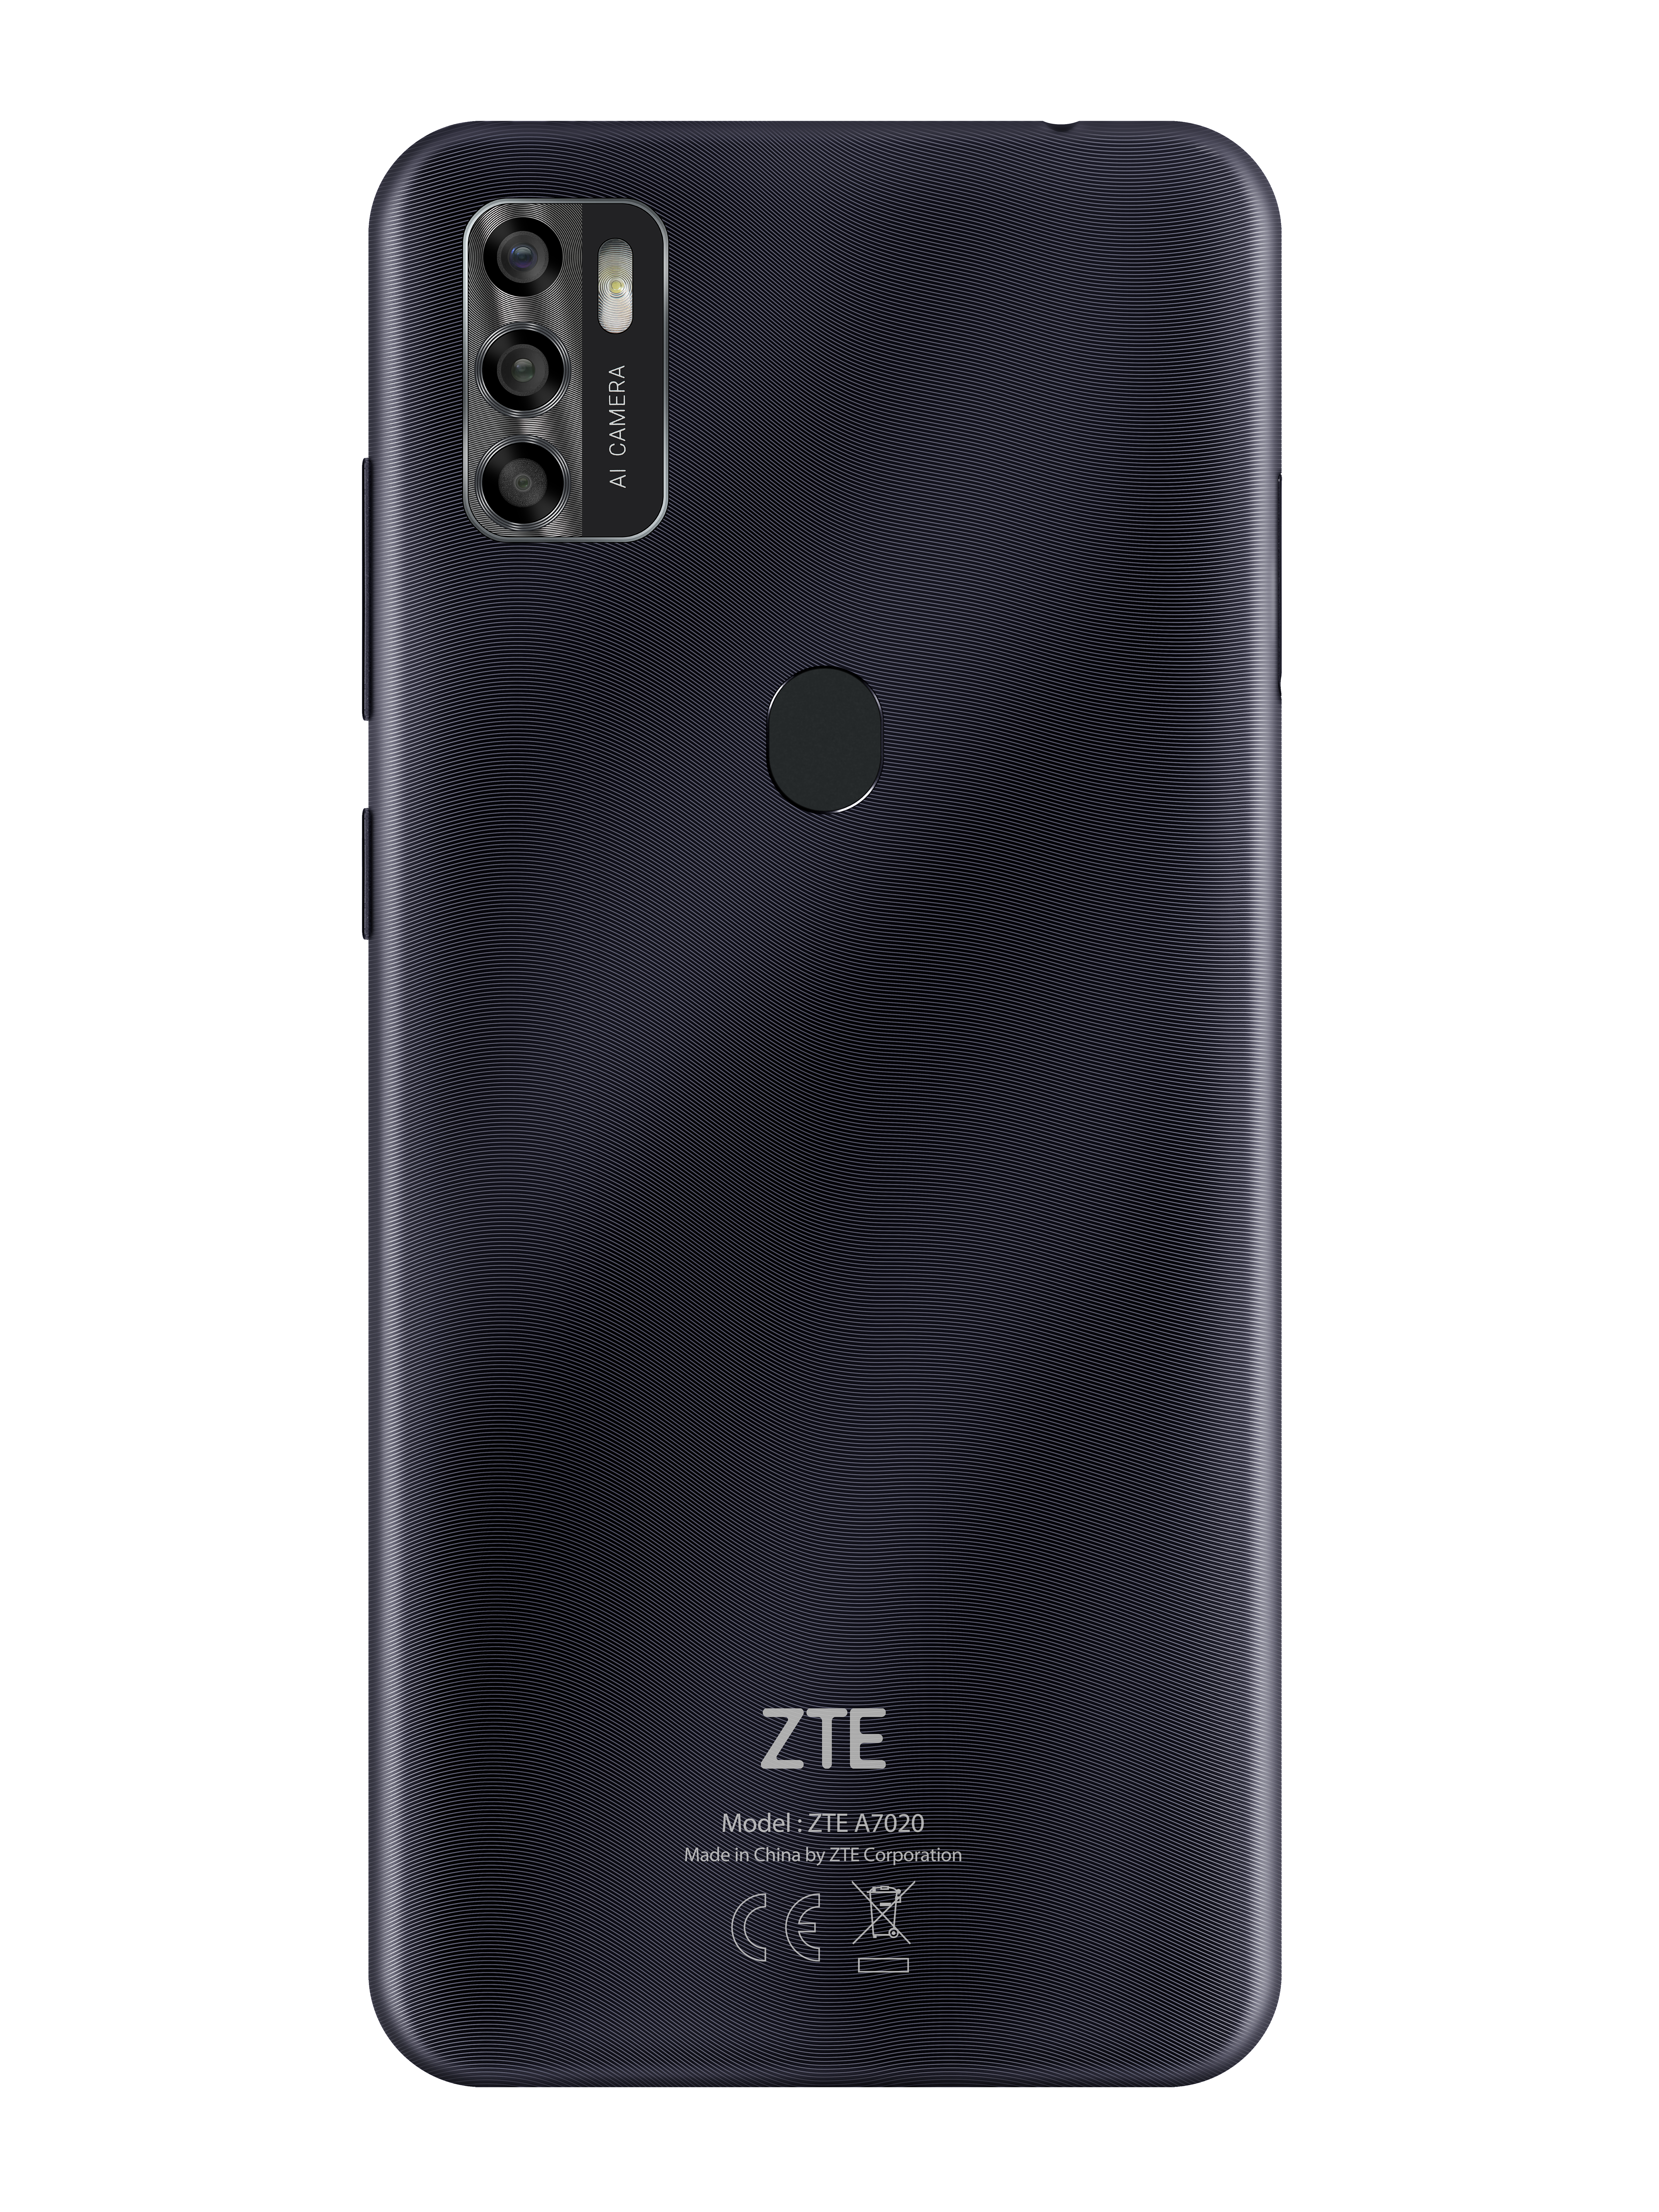 ZTE SIM Schwarz Dual GB 64 2020 A7s